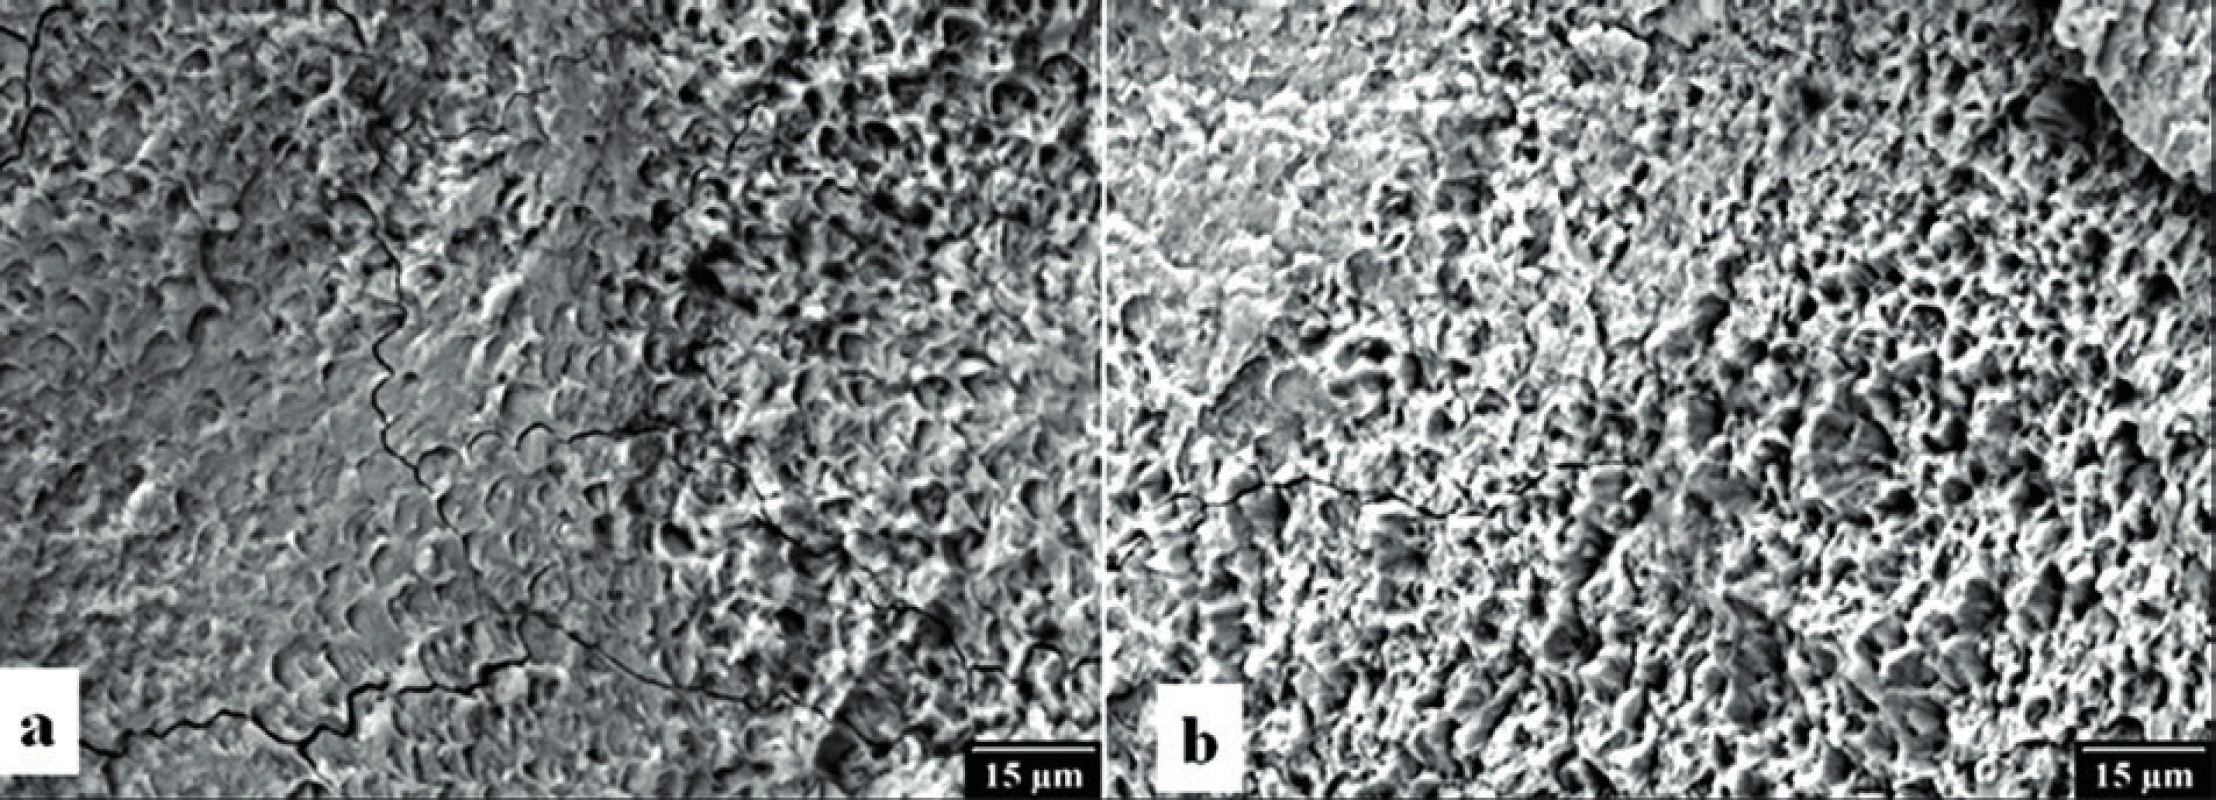 Povrch skloviny po kontaktní (a) a nekontaktní (b) laserové preparaci v elektronovém rastrovacím mikroskopu